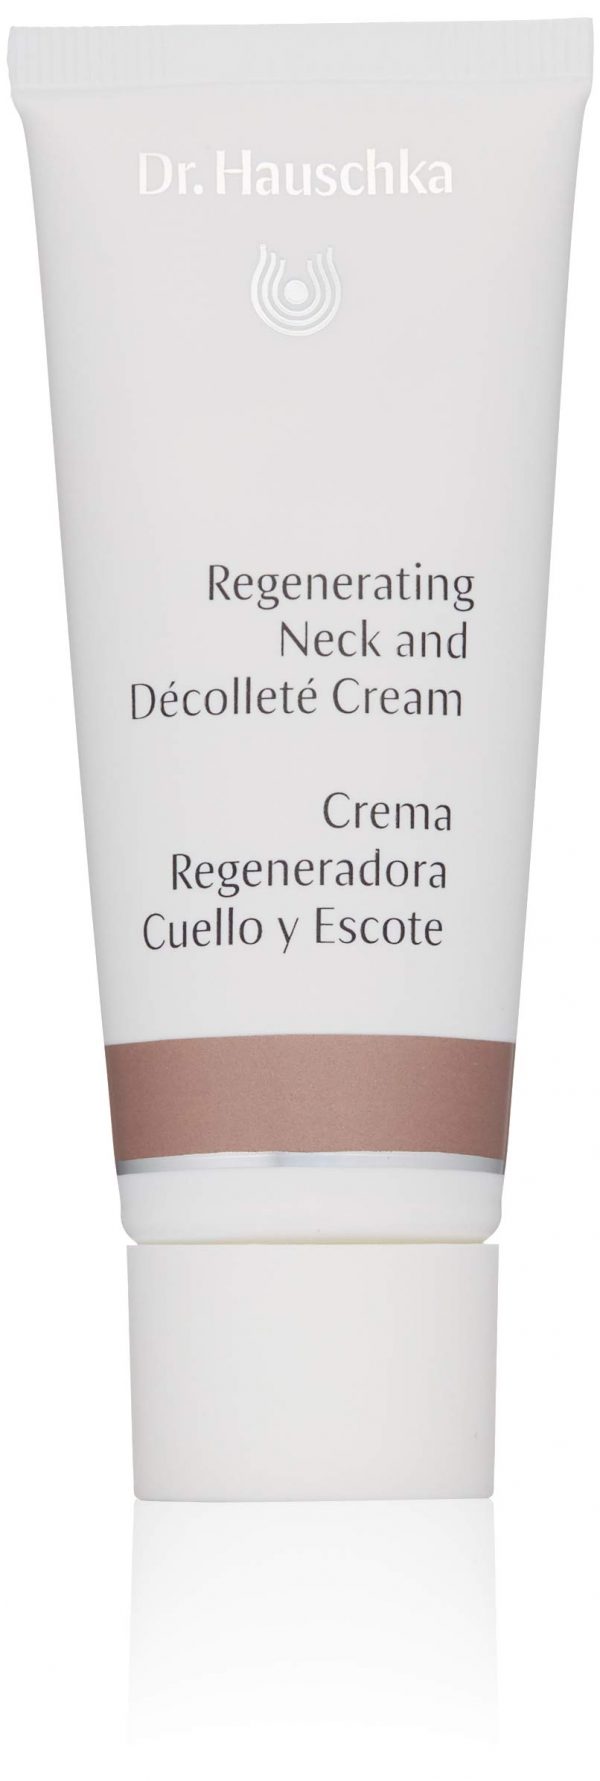 Regenerating Neck and Decollete Cream